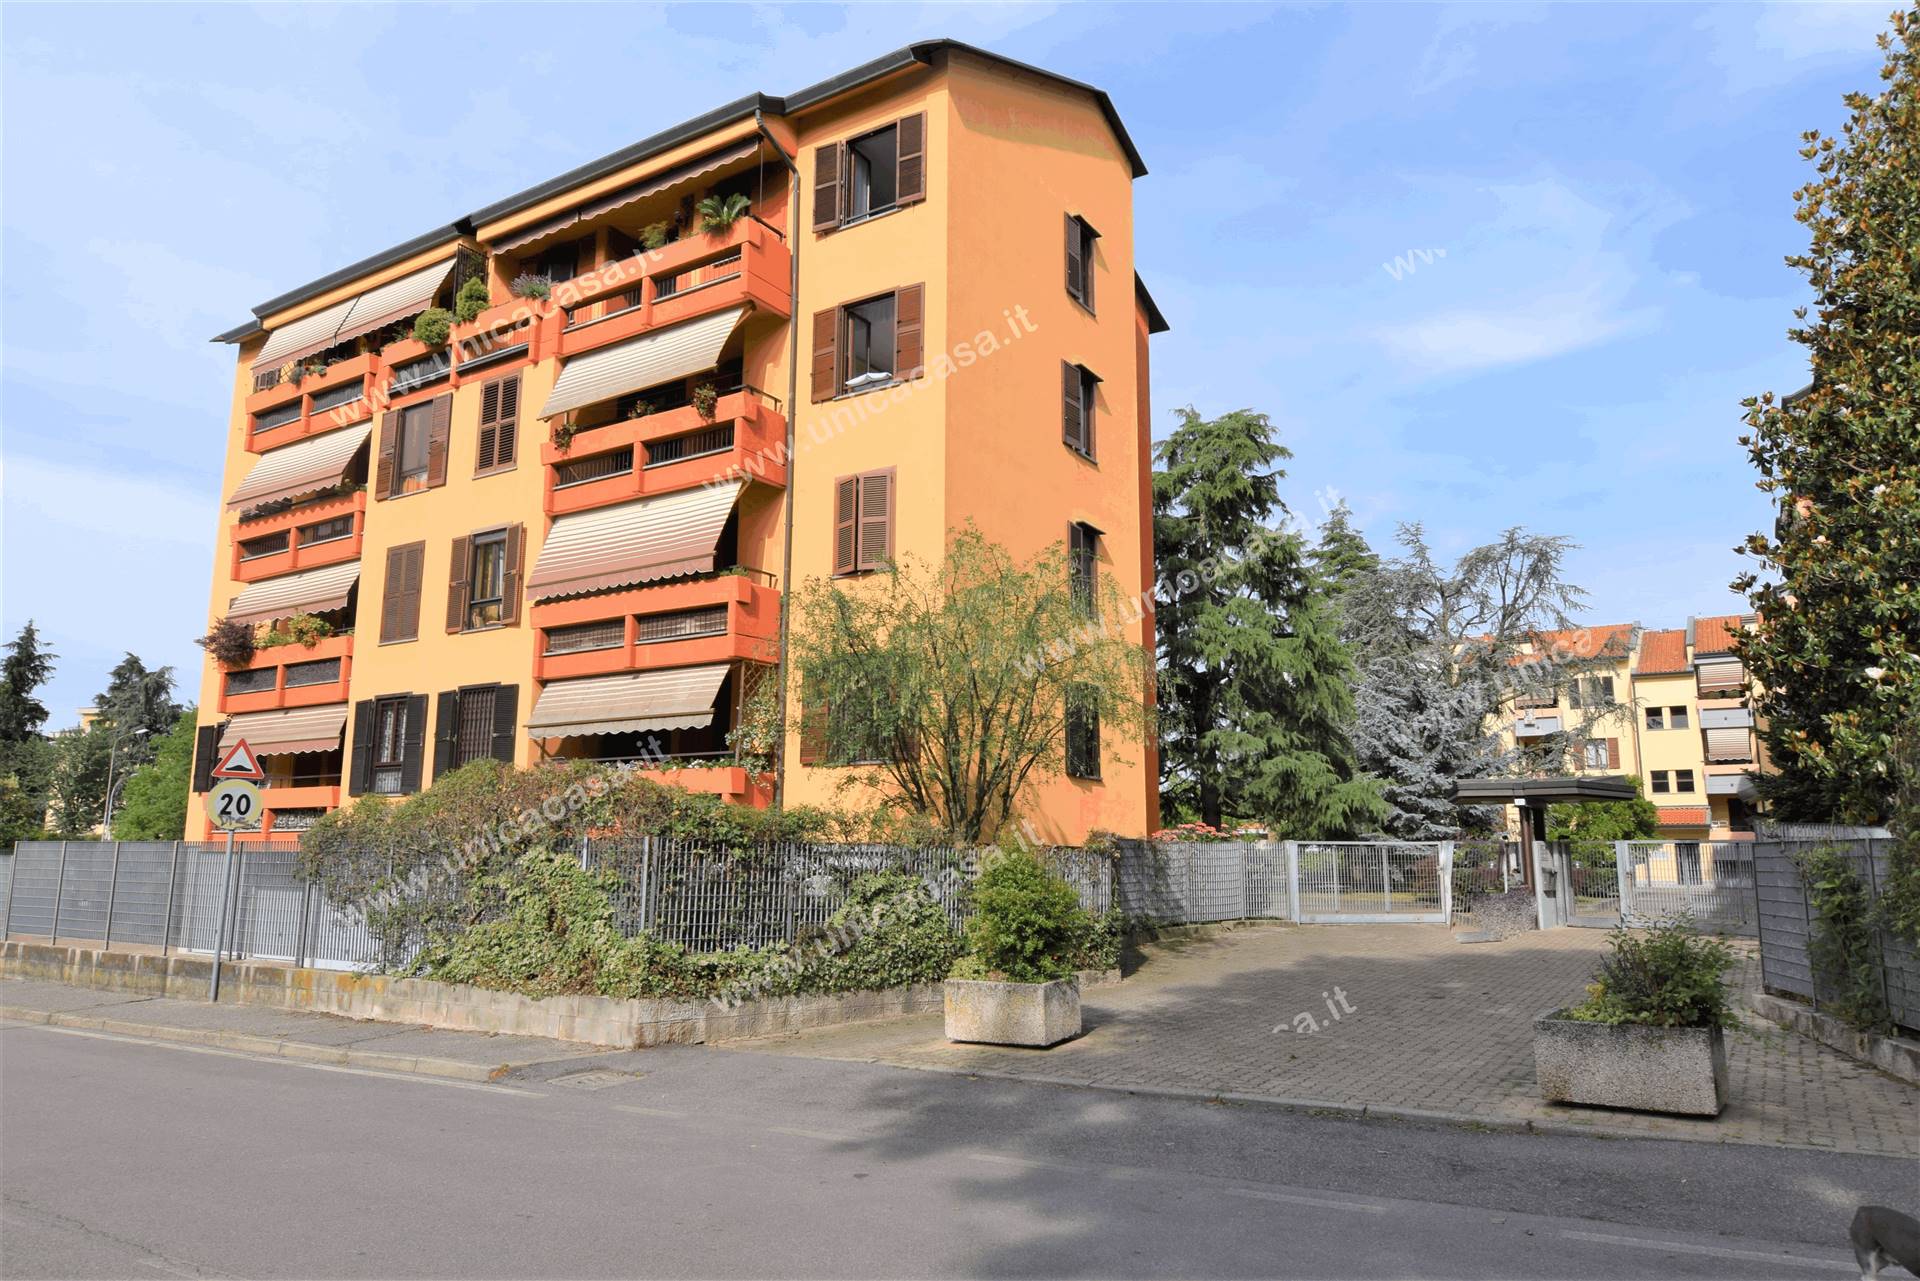 Appartamento in affitto a Cambiago, 3 locali, prezzo € 850 | PortaleAgenzieImmobiliari.it